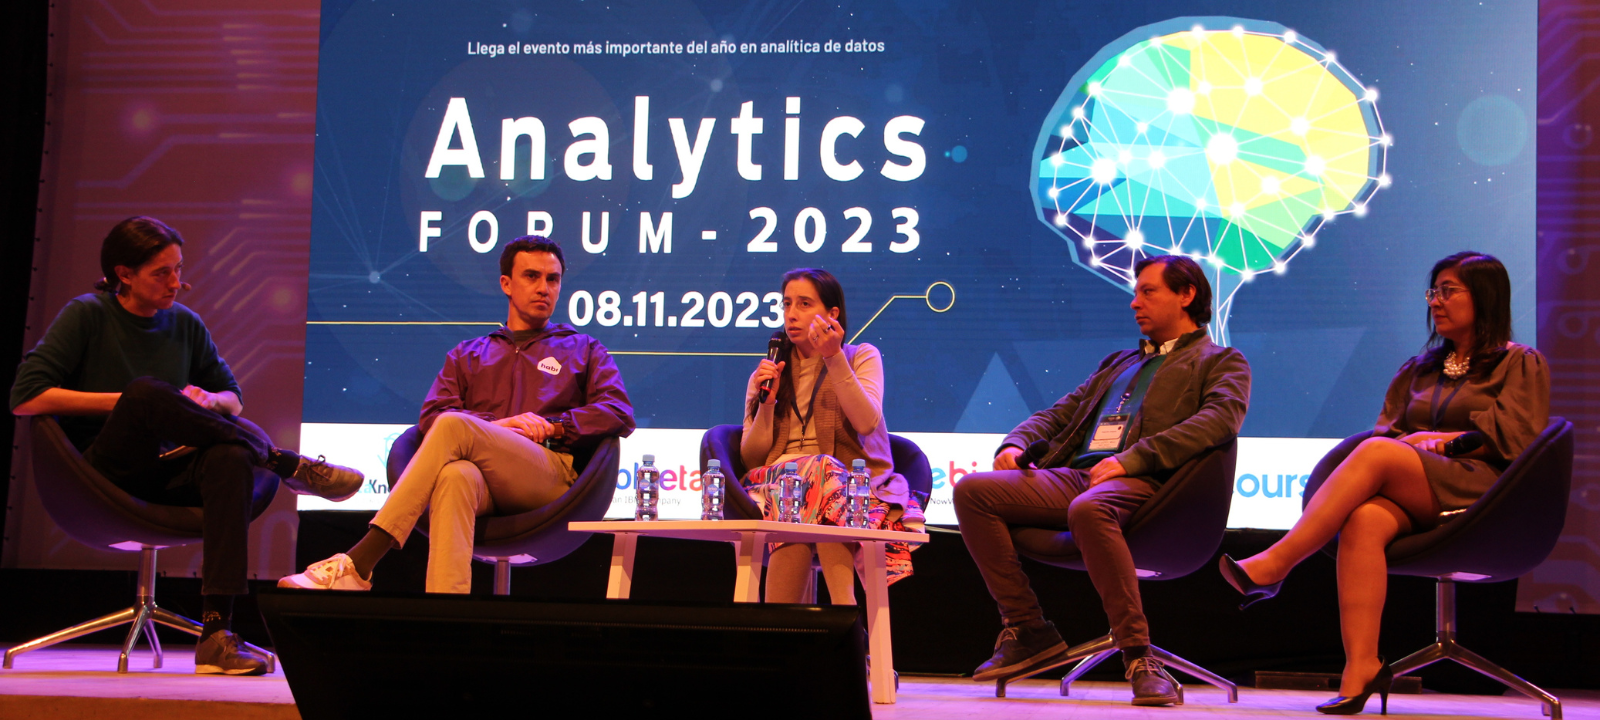 La revolución de los datos: Analytics Forum 2023